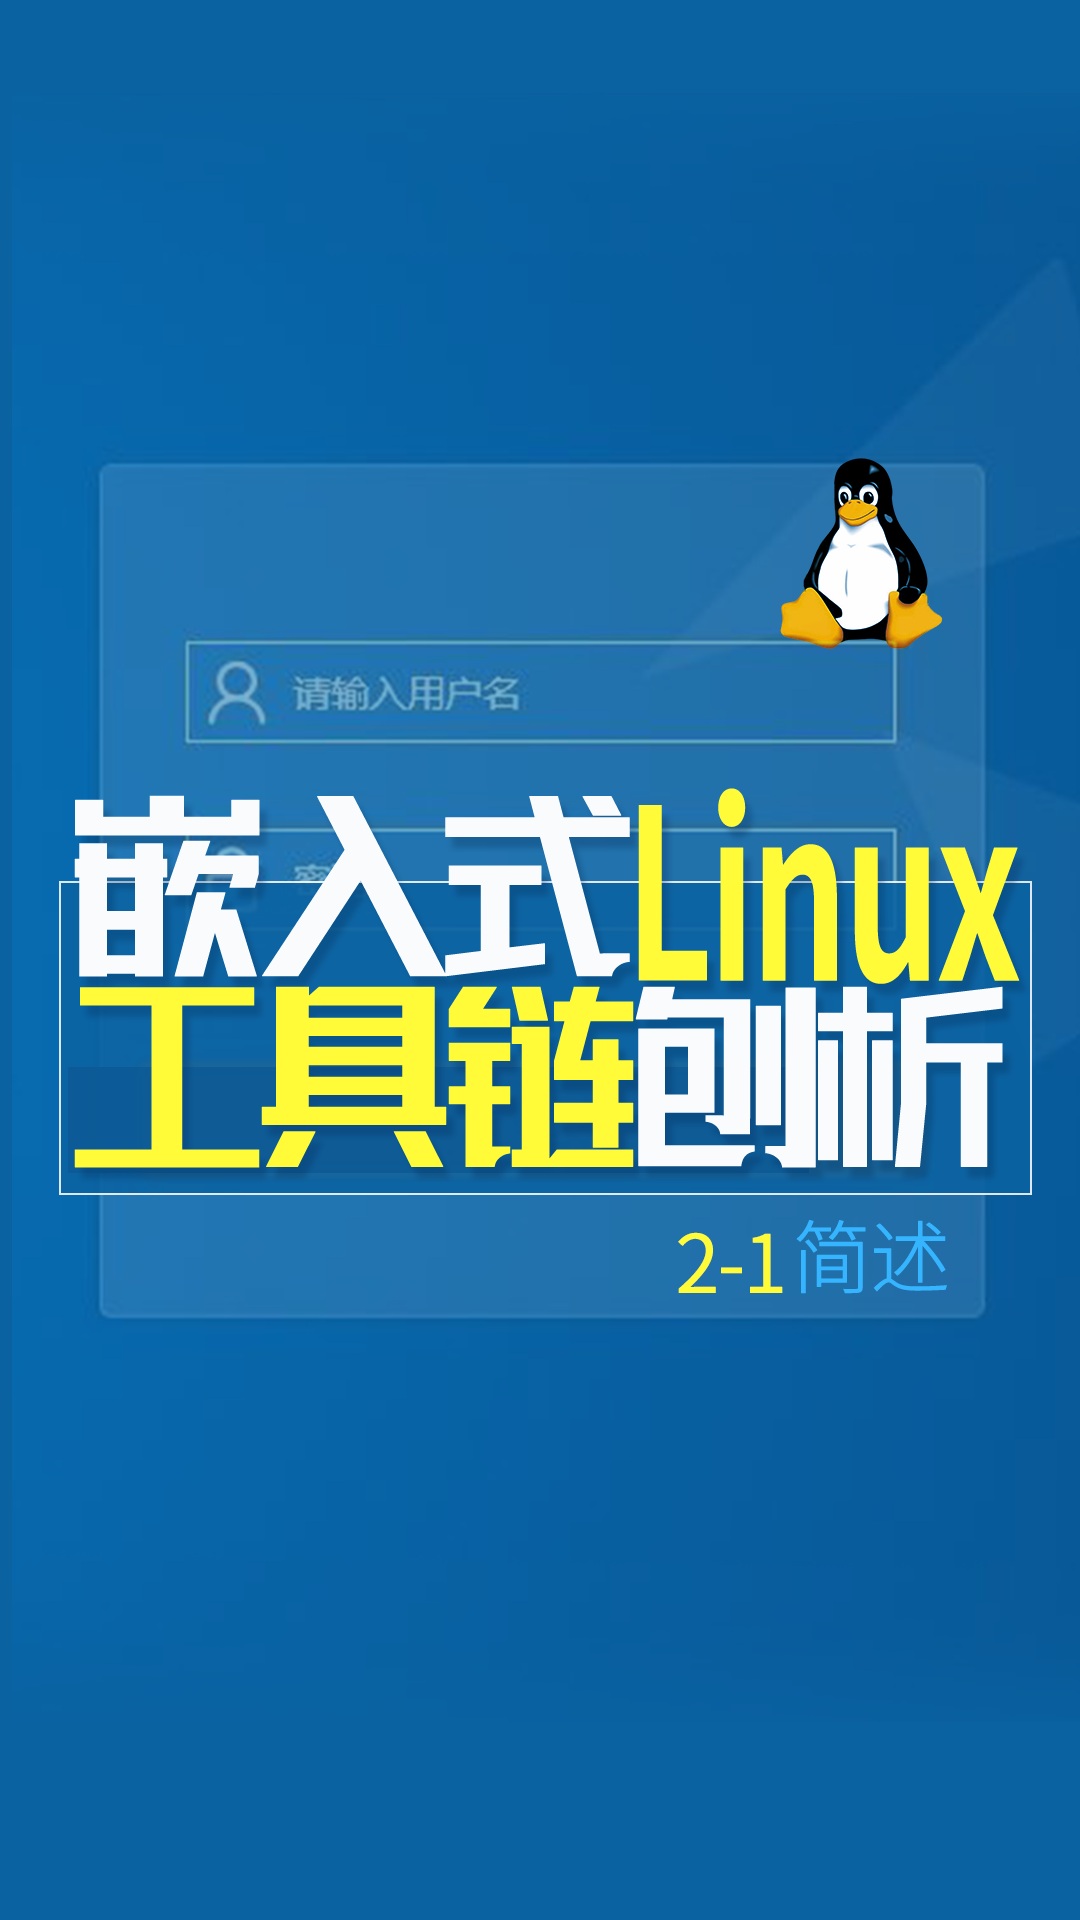 嵌入式Linux工具链刨析-简述2-1#嵌入式开发 